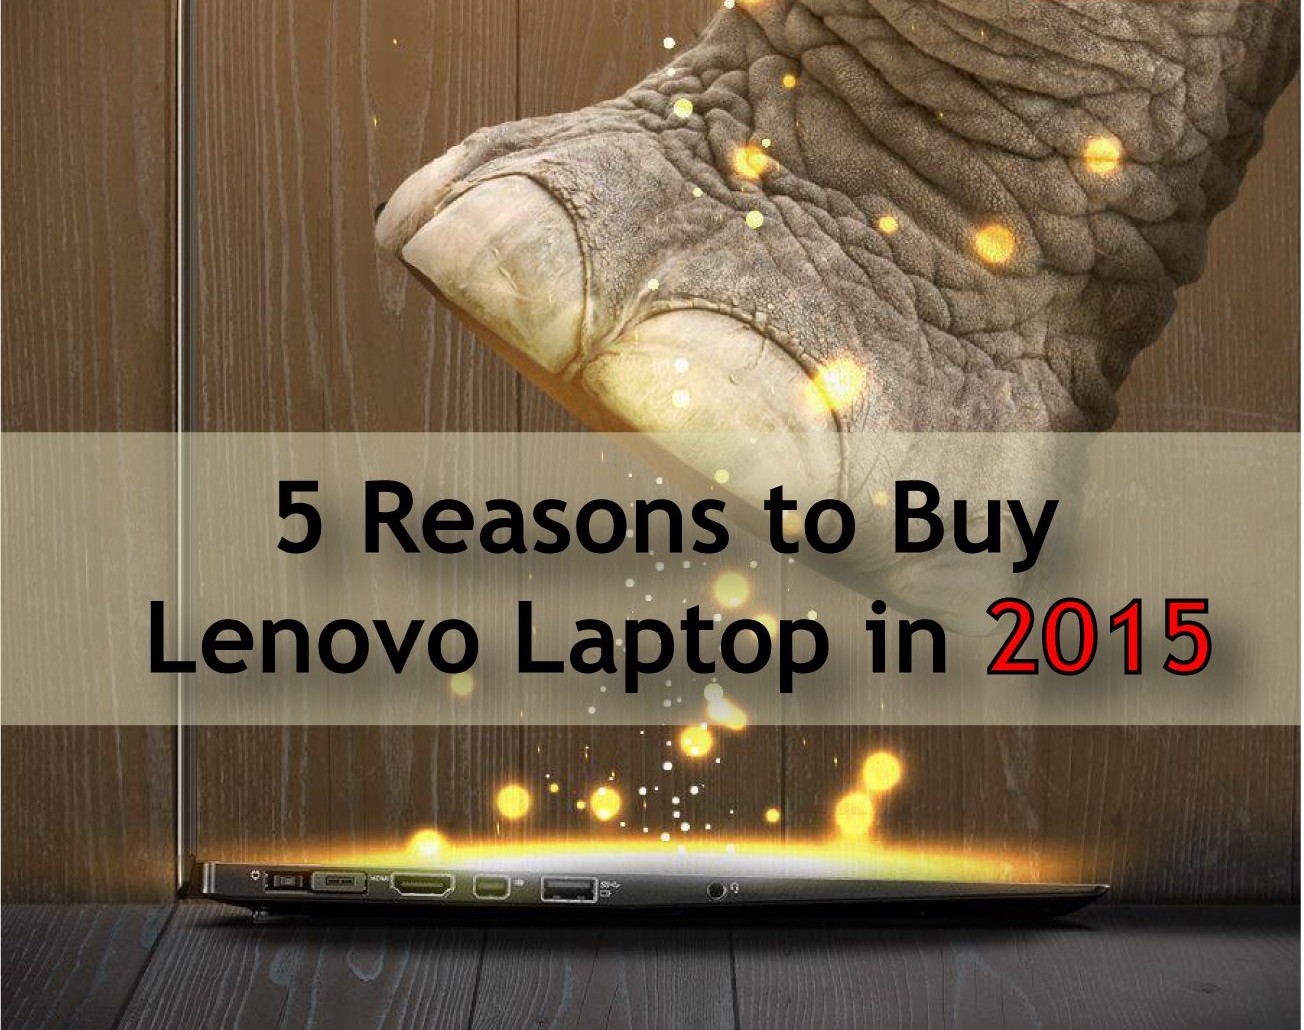 5 Reasons to Buy lenovo Laptops in 2015